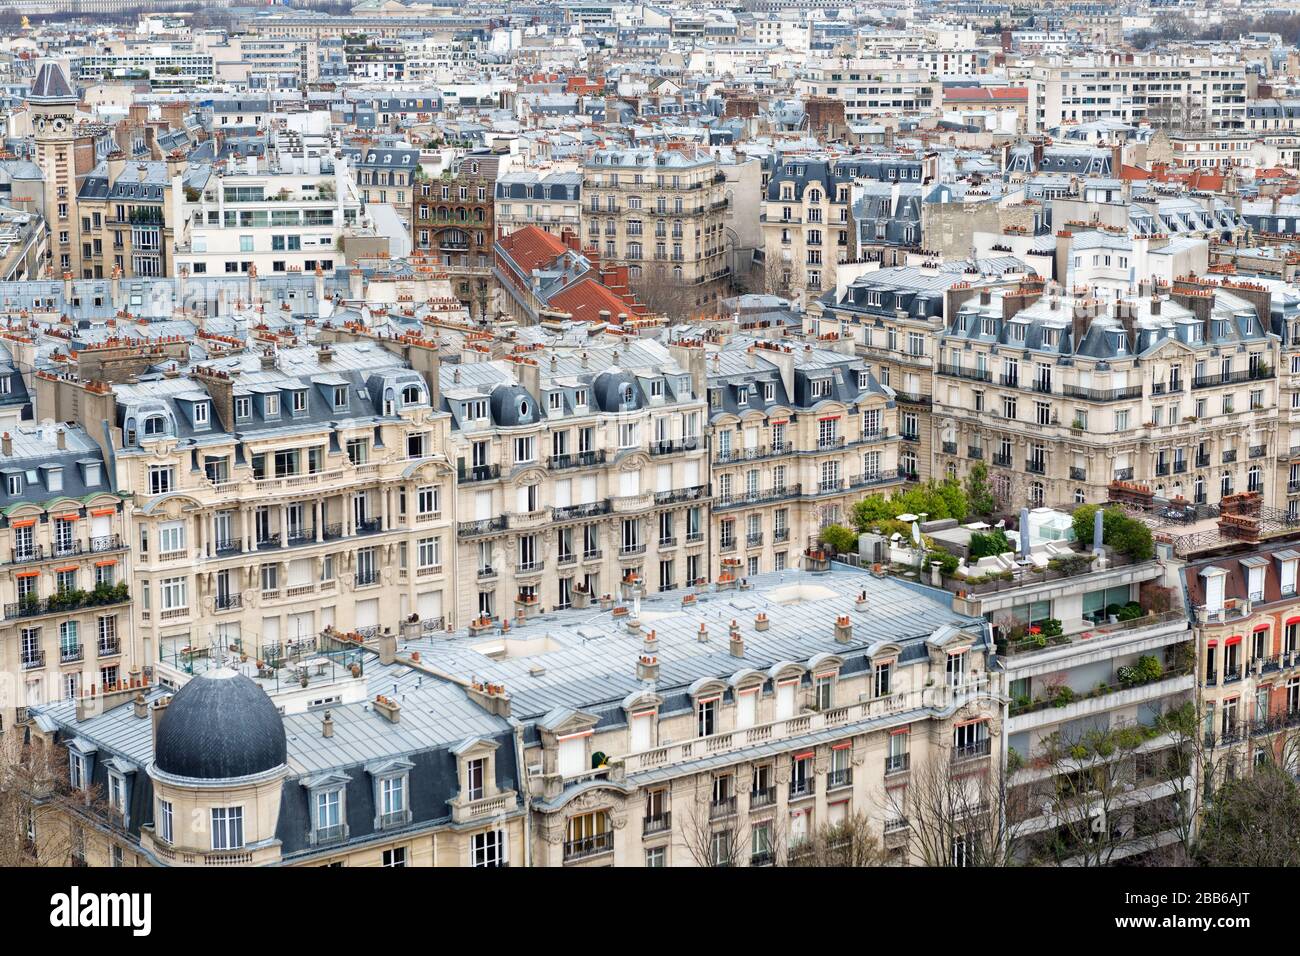 Vue aérienne sur les toits de bouées haussmaniens de la ville de Paris, France. Banque D'Images